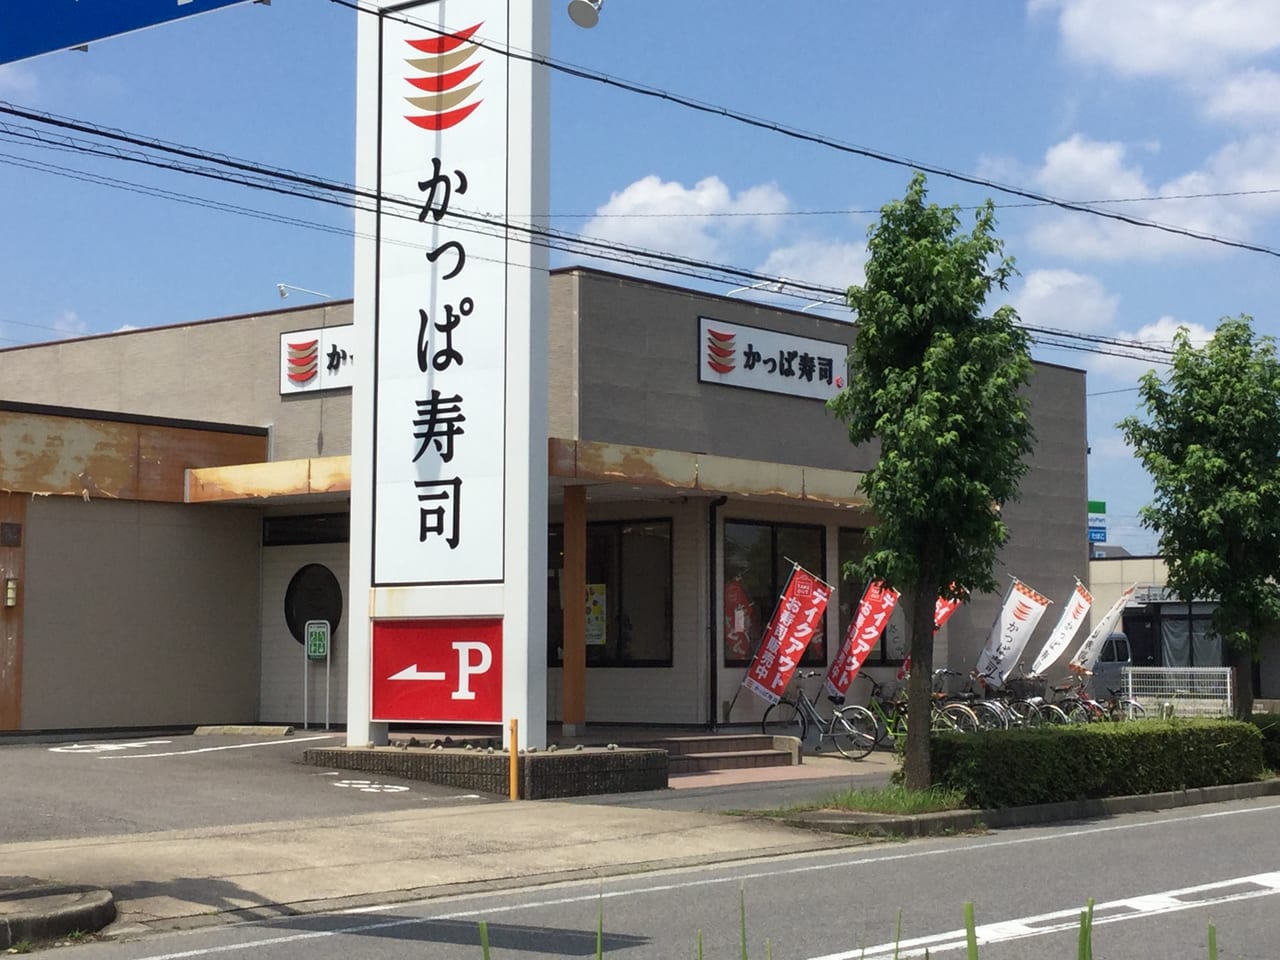 春日井市 愛知県に新たなモーニングの風 かっぱ寿司 でモーニングが始まります 号外net 春日井市